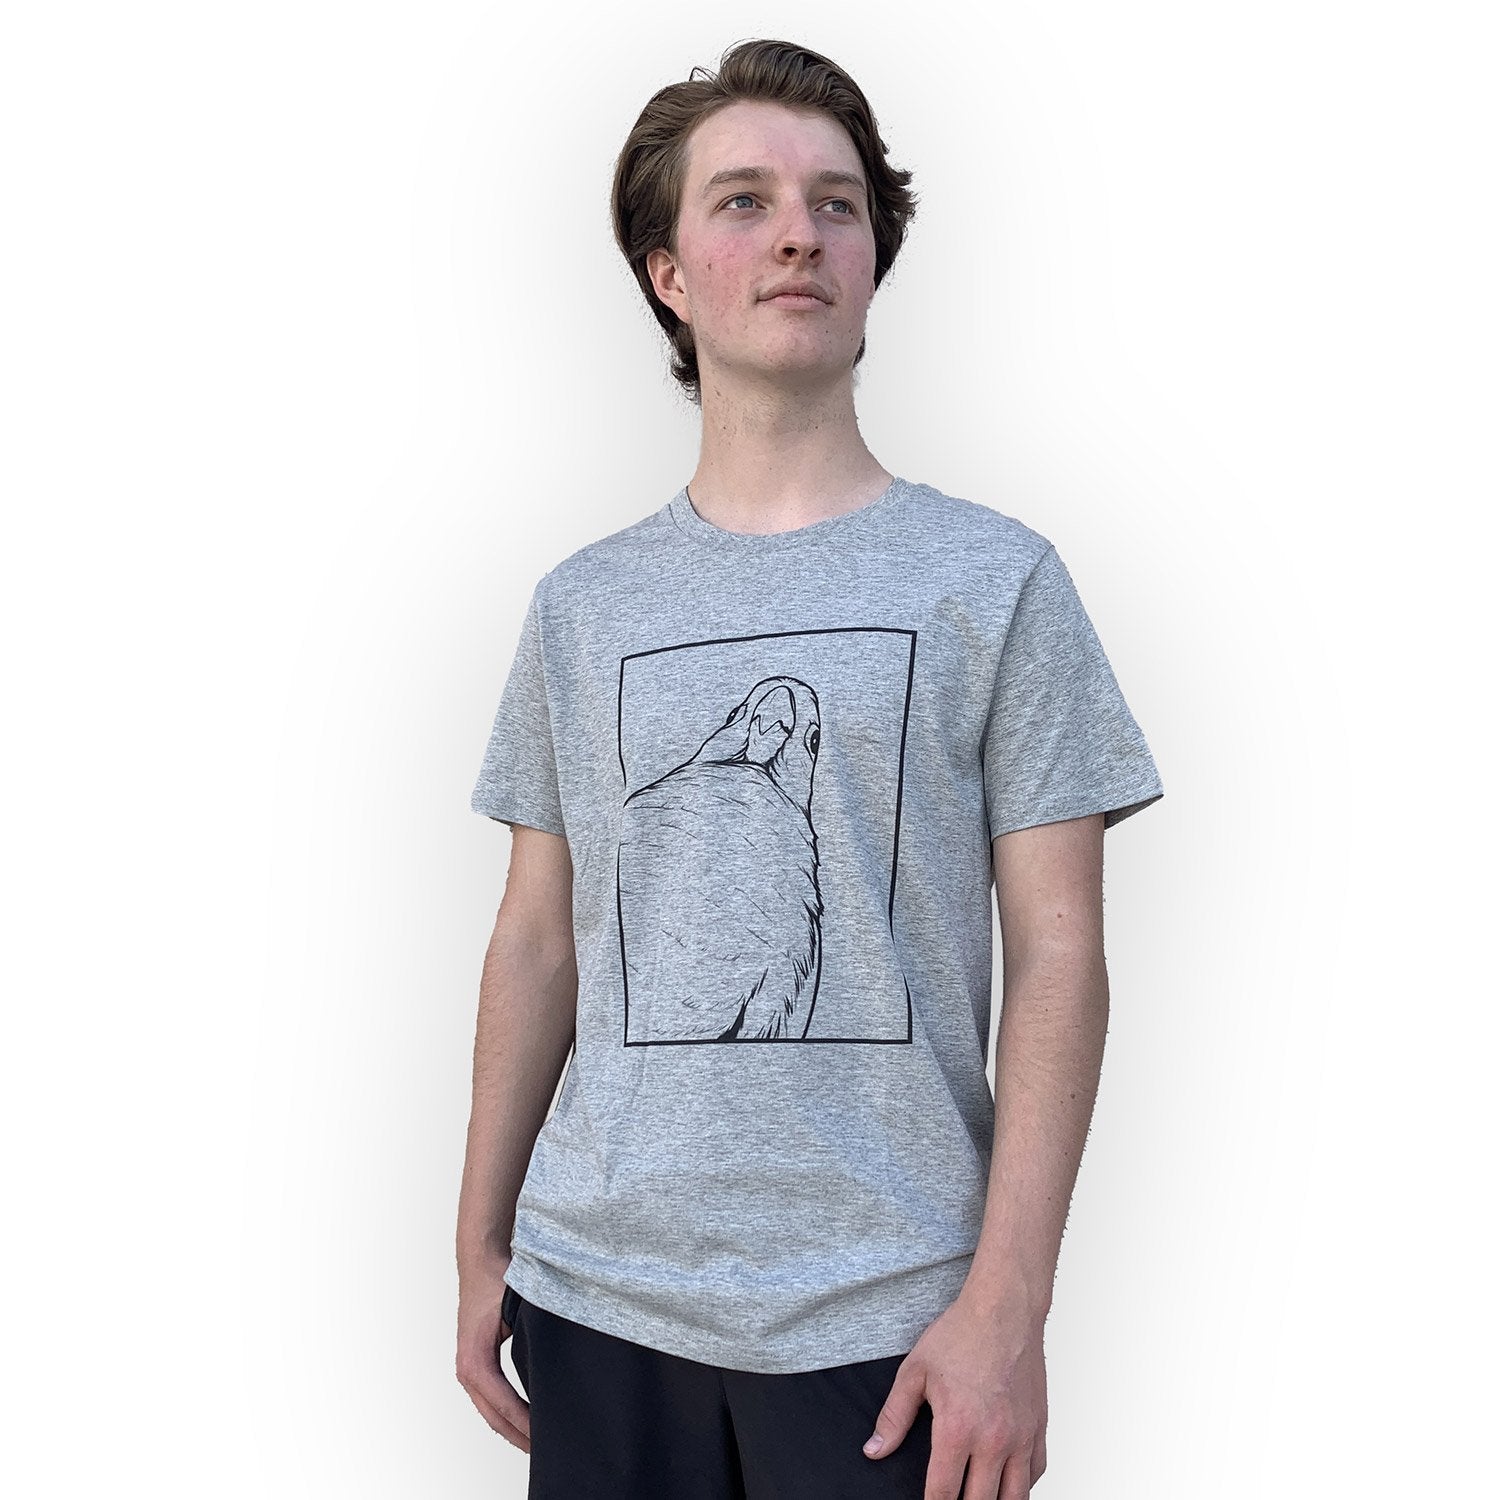 Jaiden Animations Bird Stare 2023 Shirt